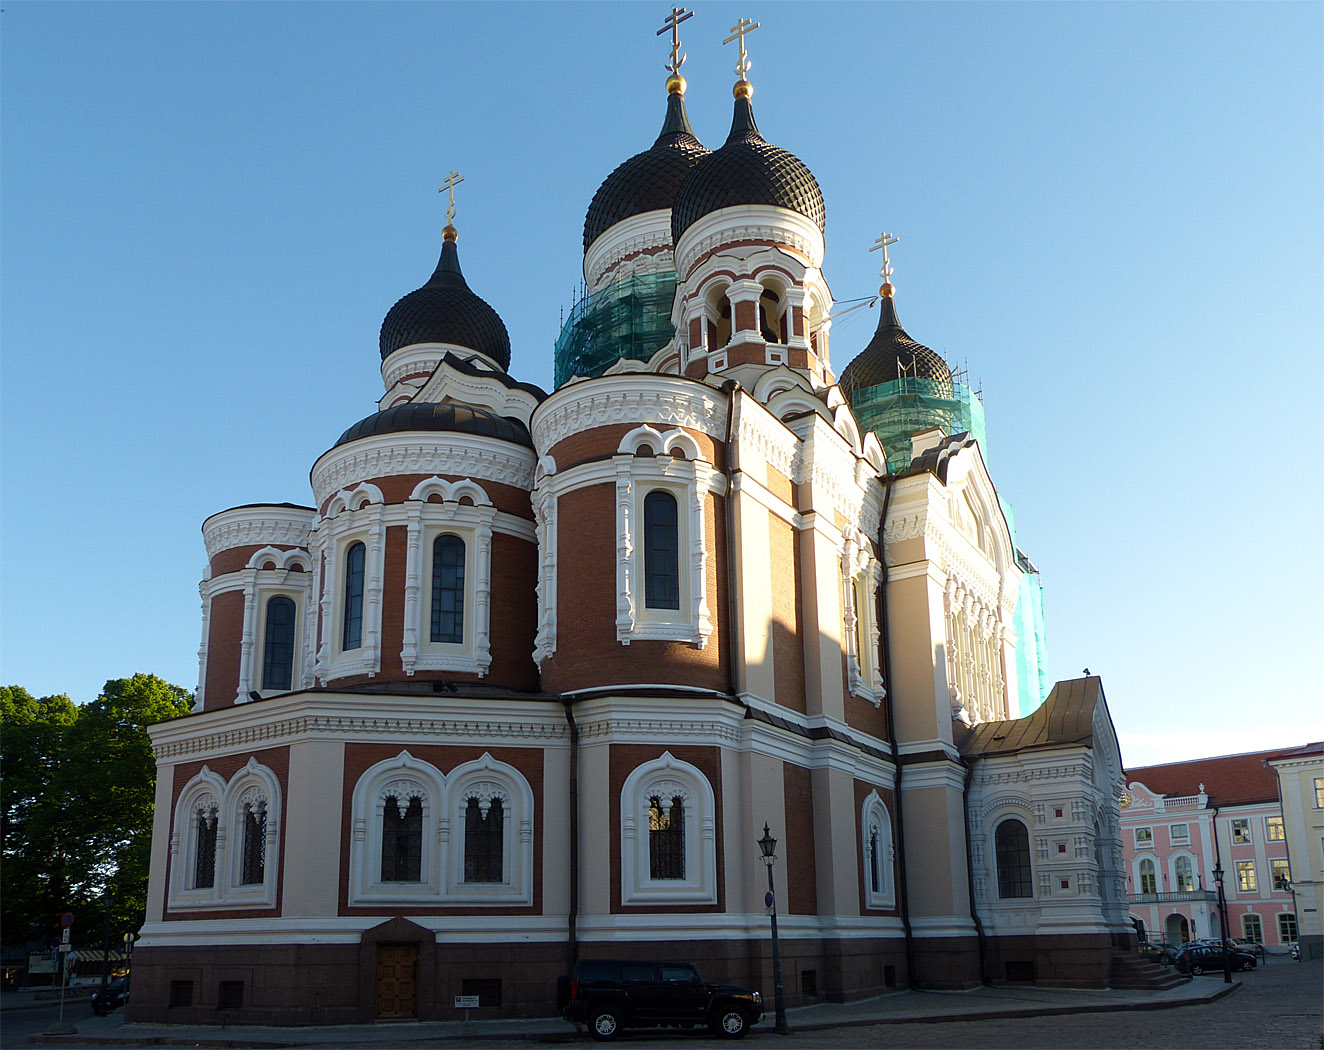 St Alexander Nevsky Cathedral, Tallinn, Estonia